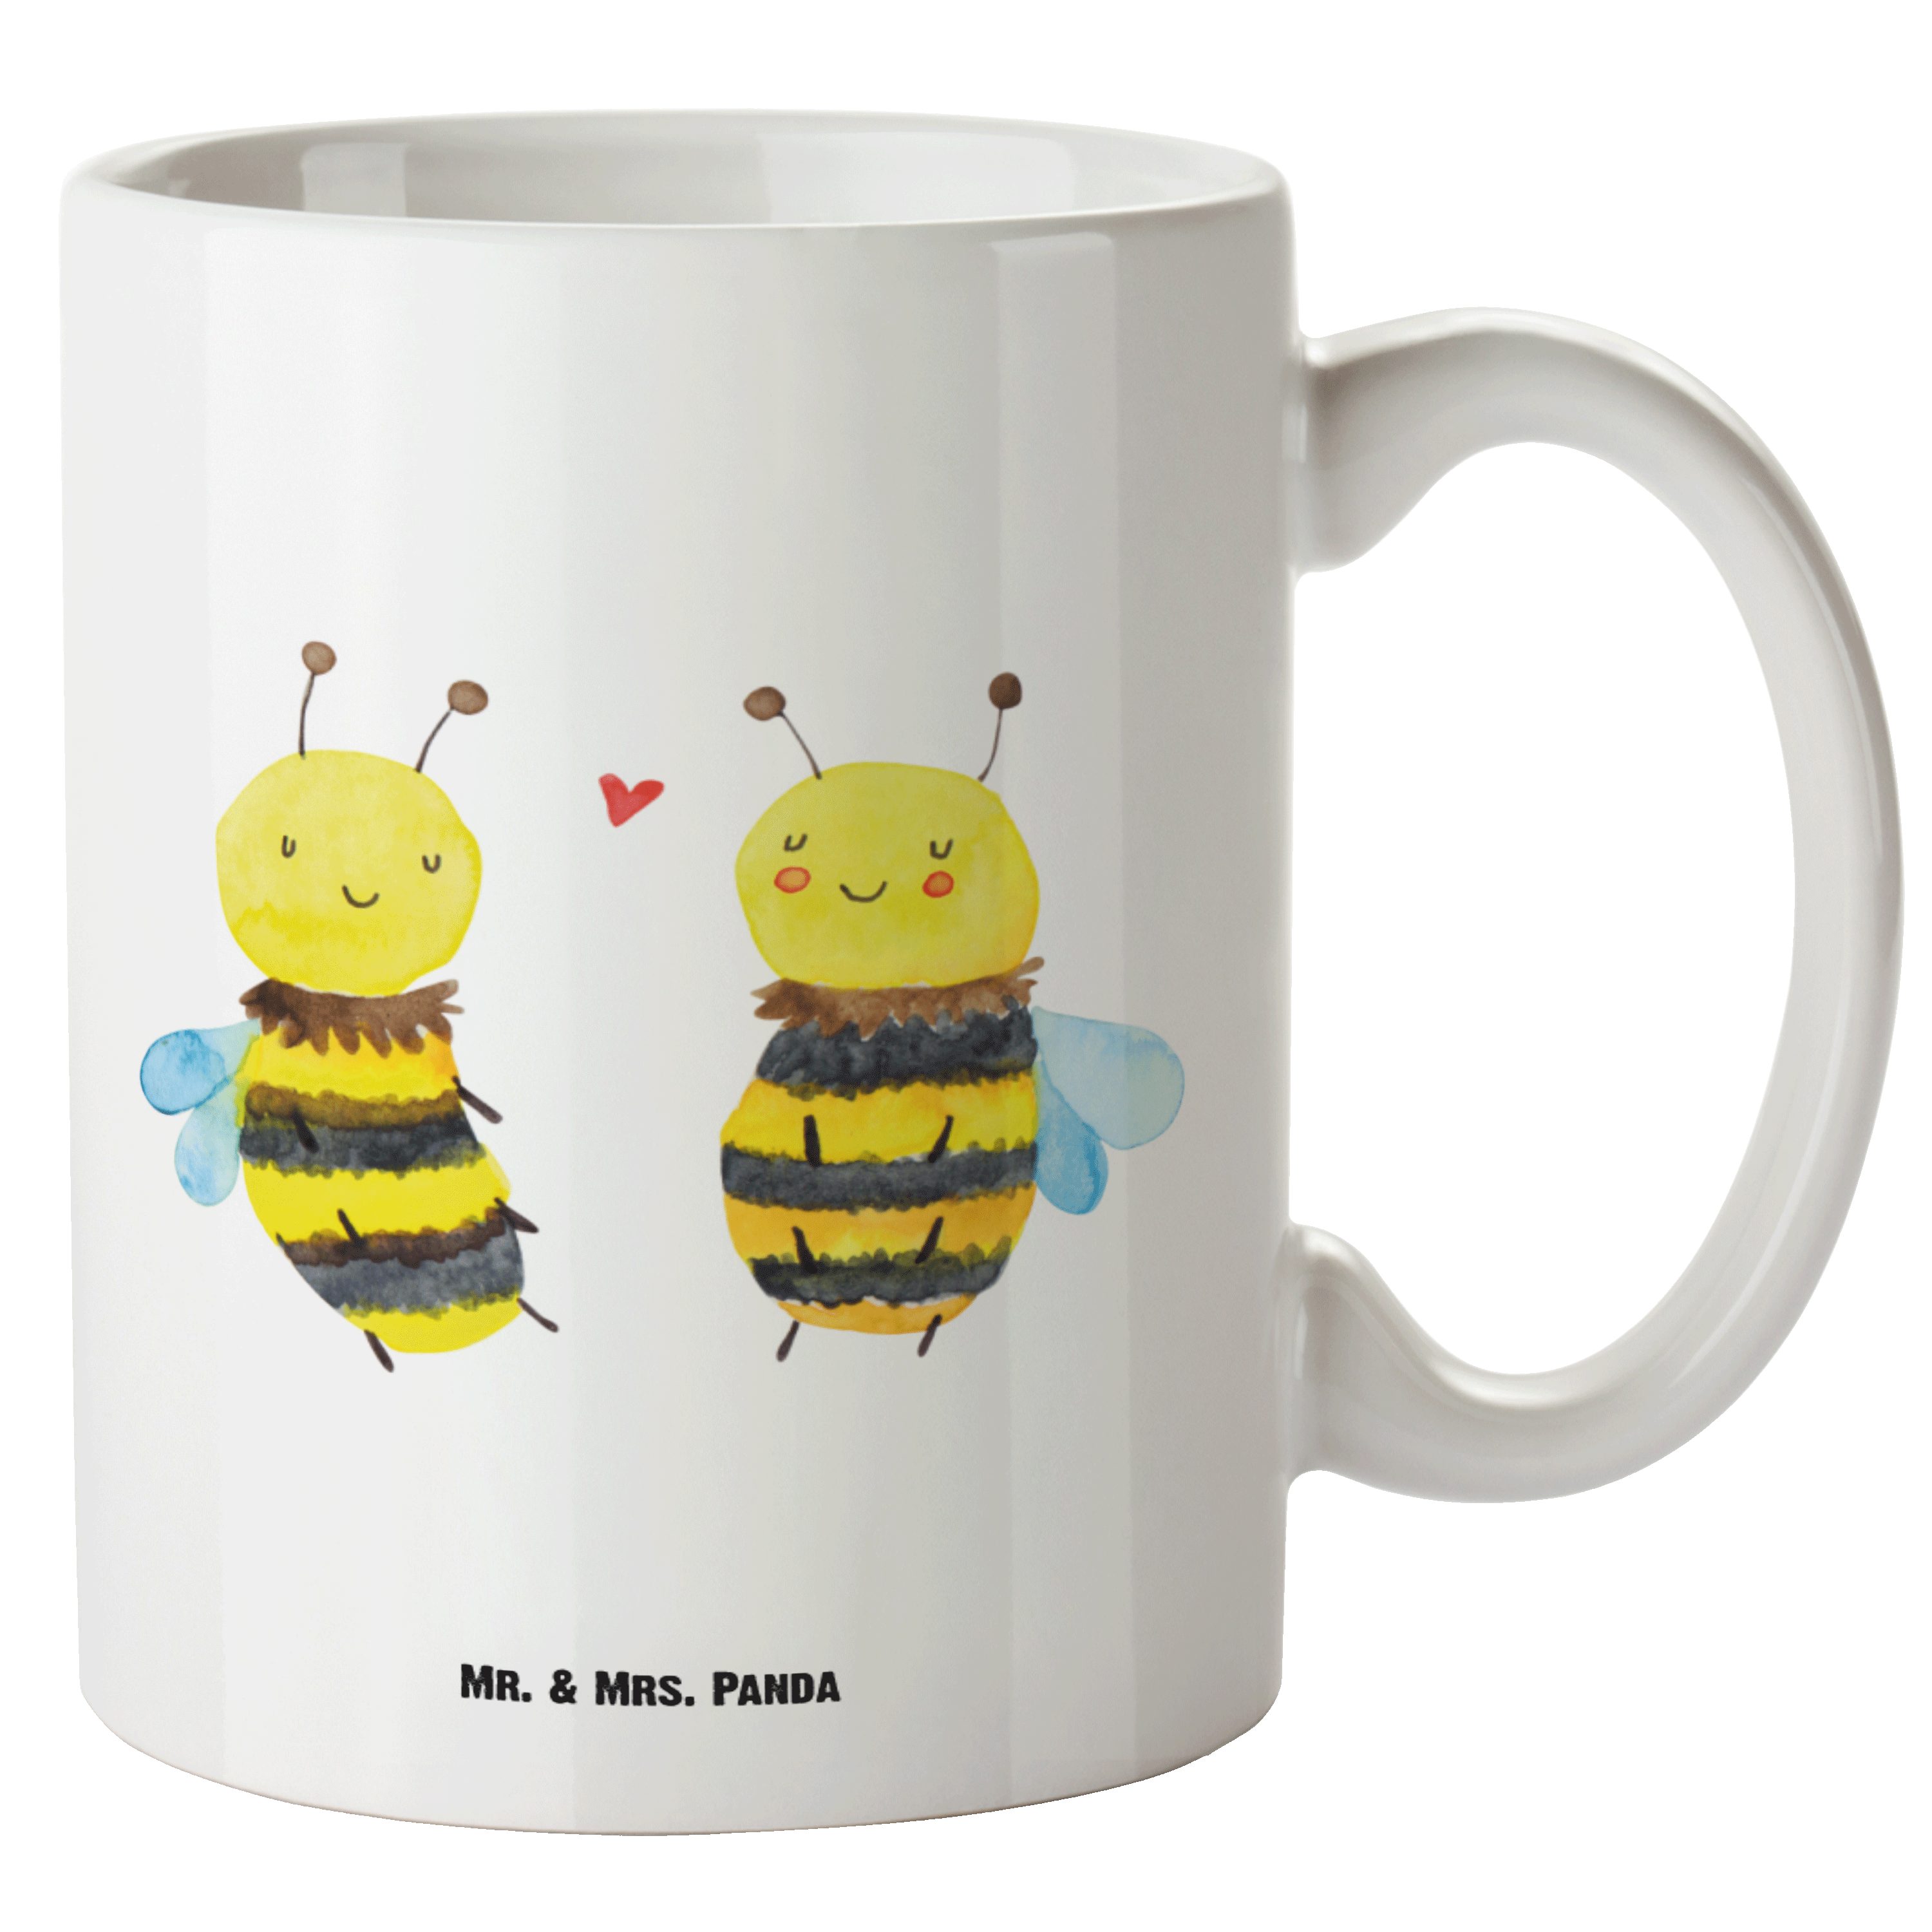 Mr. & Mrs. Panda Tasse Biene Verliebt - Weiß - Geschenk, spülmaschinenfest, Große Tasse, XL, XL Tasse Keramik